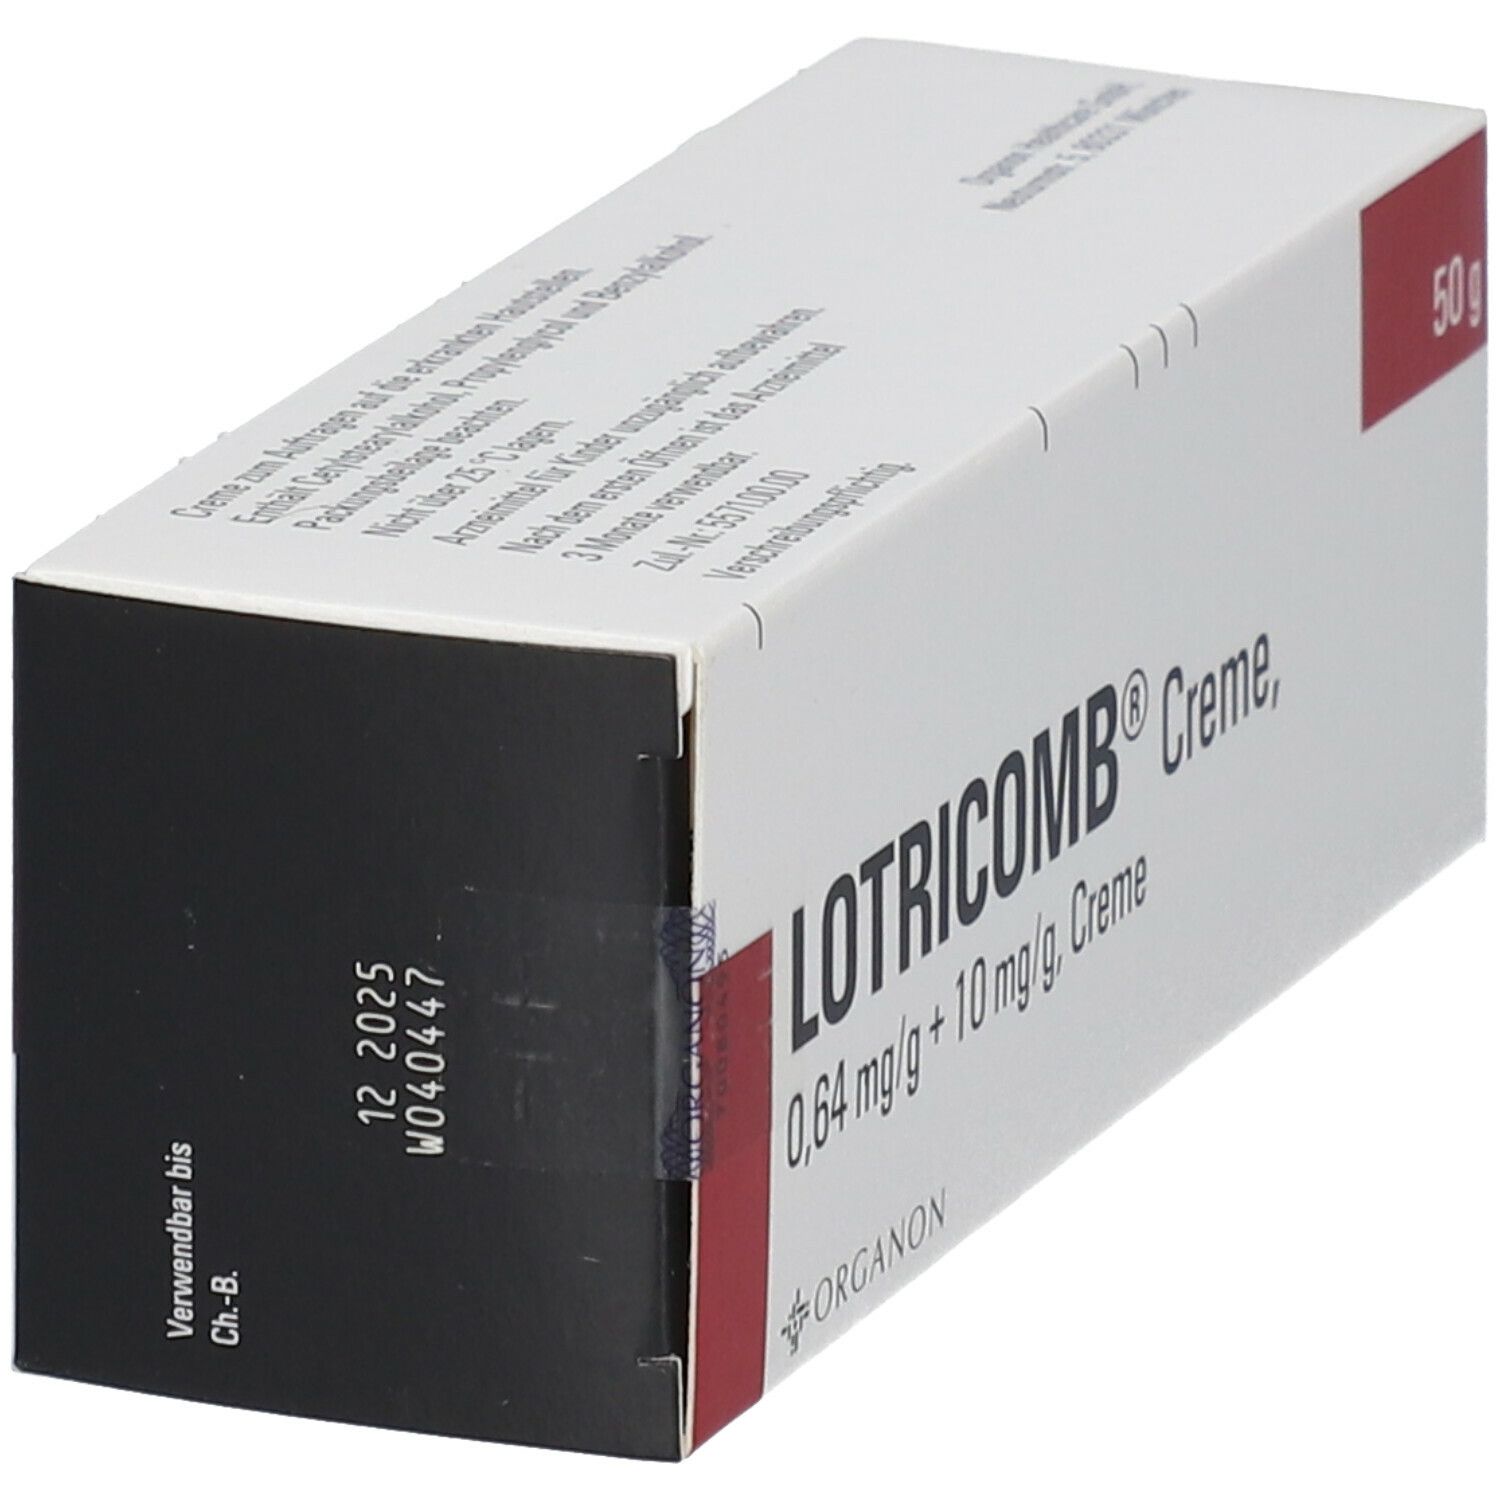 LOTRICOMB® Creme 0,64 mg/g + 10 mg/g